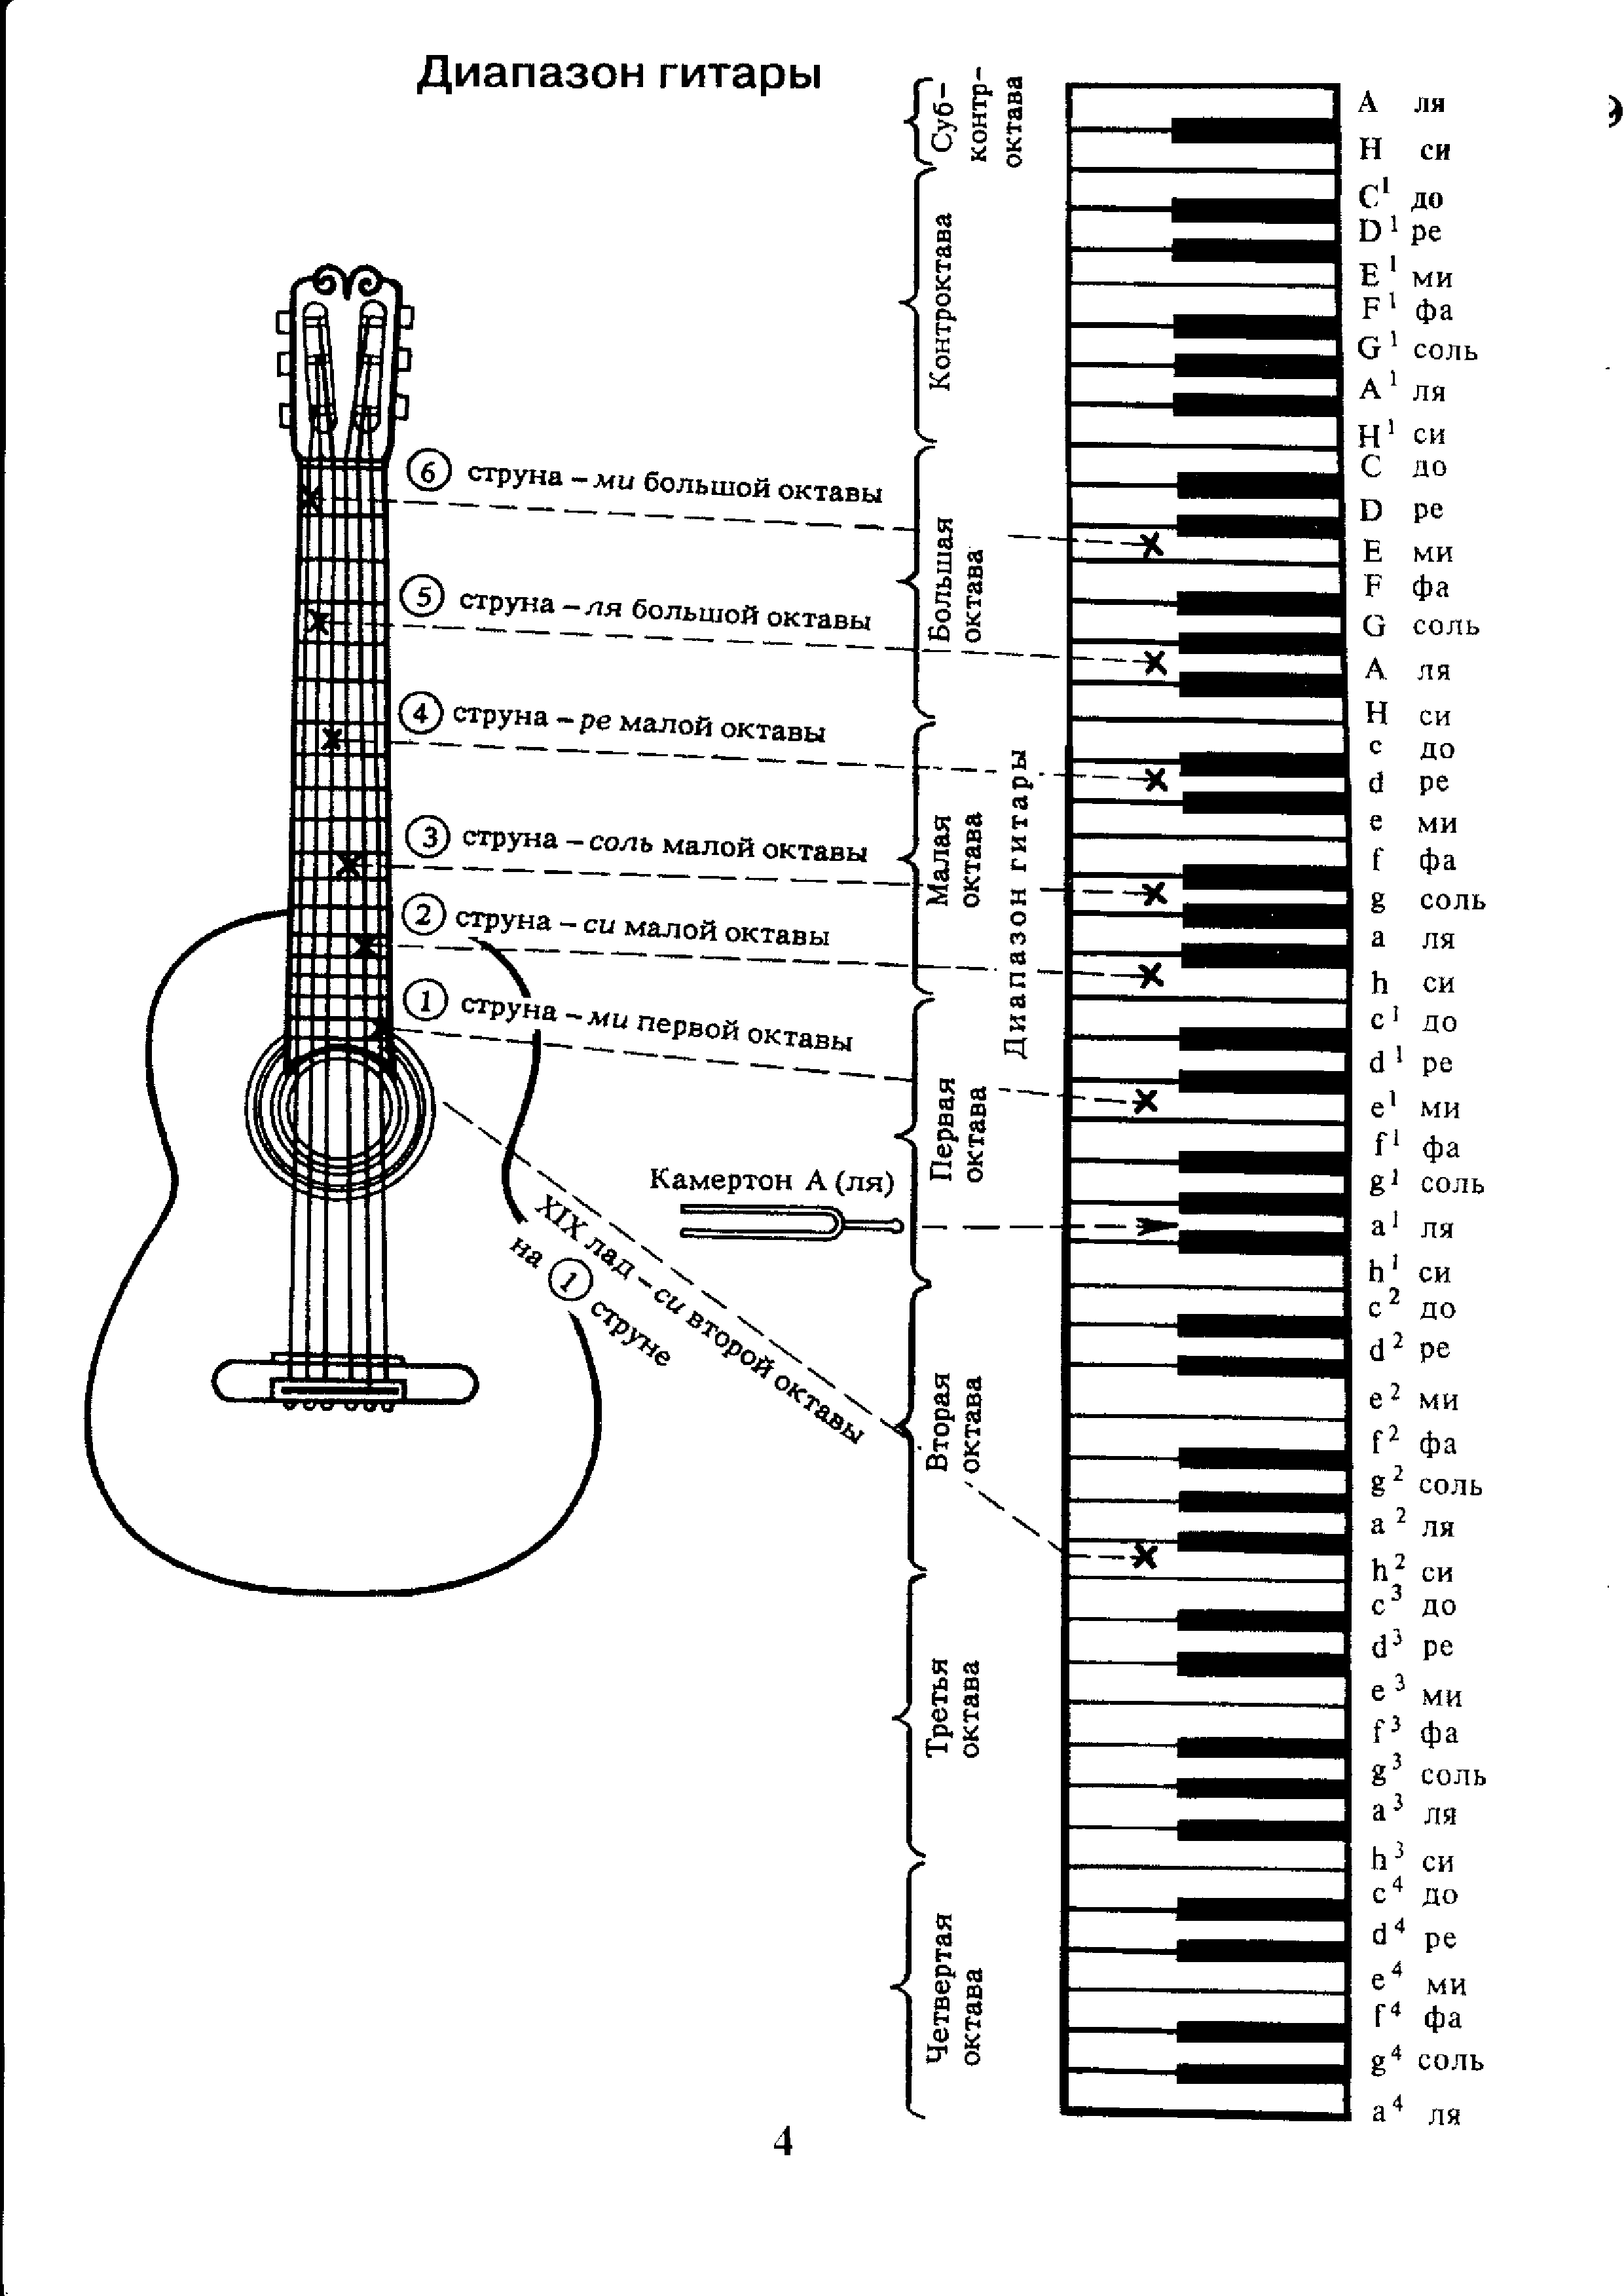 6 струнной звуки. Аппликатура аккордов для гитары 6 струн для начинающих. Ноты на гитарном грифе 6 струнной. Лады на 6 струнной гитаре для начинающих. Схема гитары классической 6 струнной.